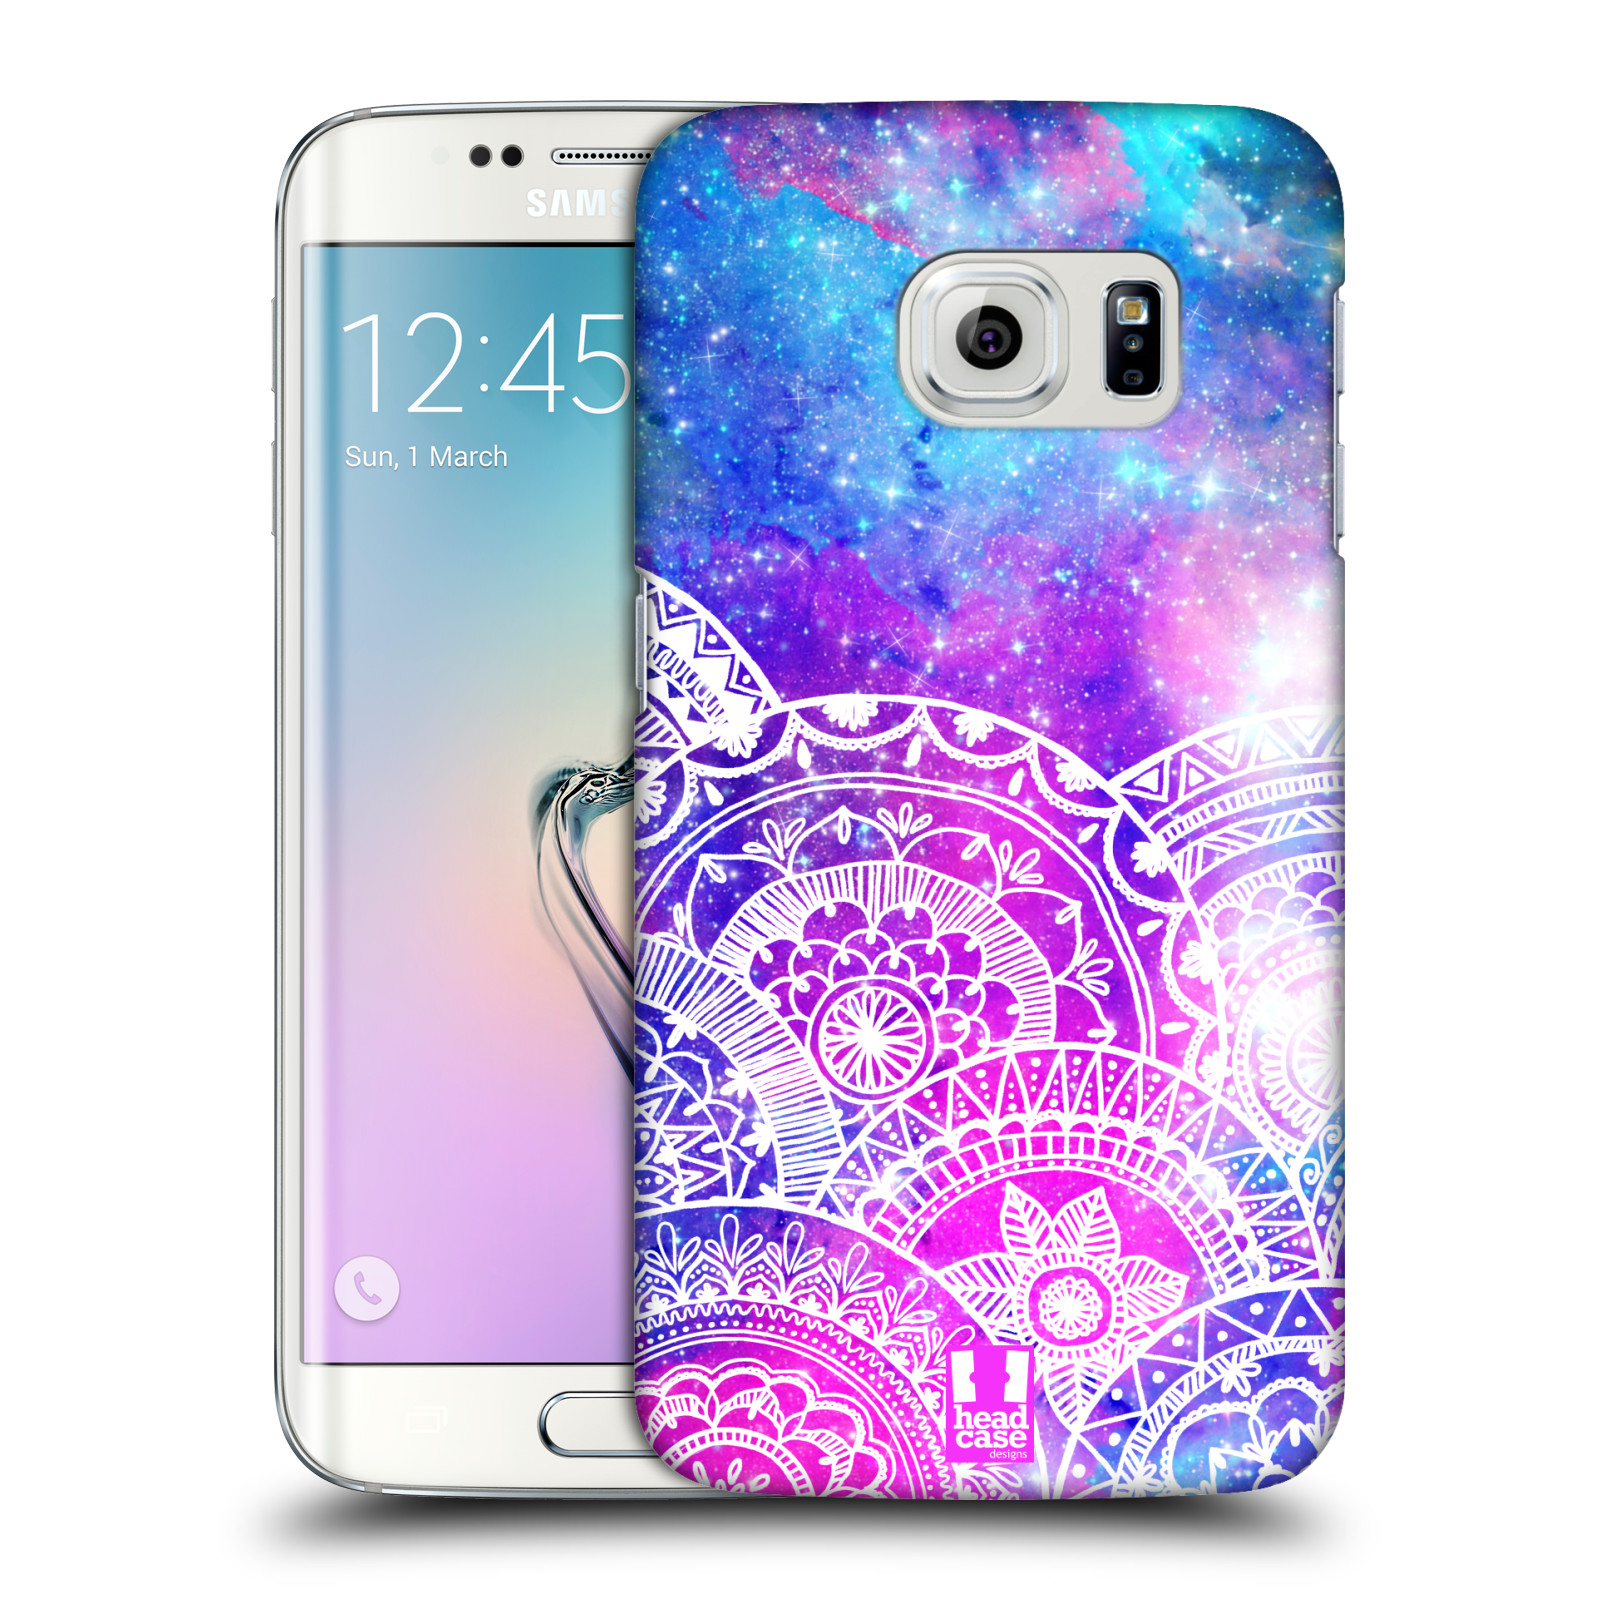 Pouzdro na mobil Samsung Galaxy S6 EDGE - HEAD CASE - Mandala nekonečná galaxie